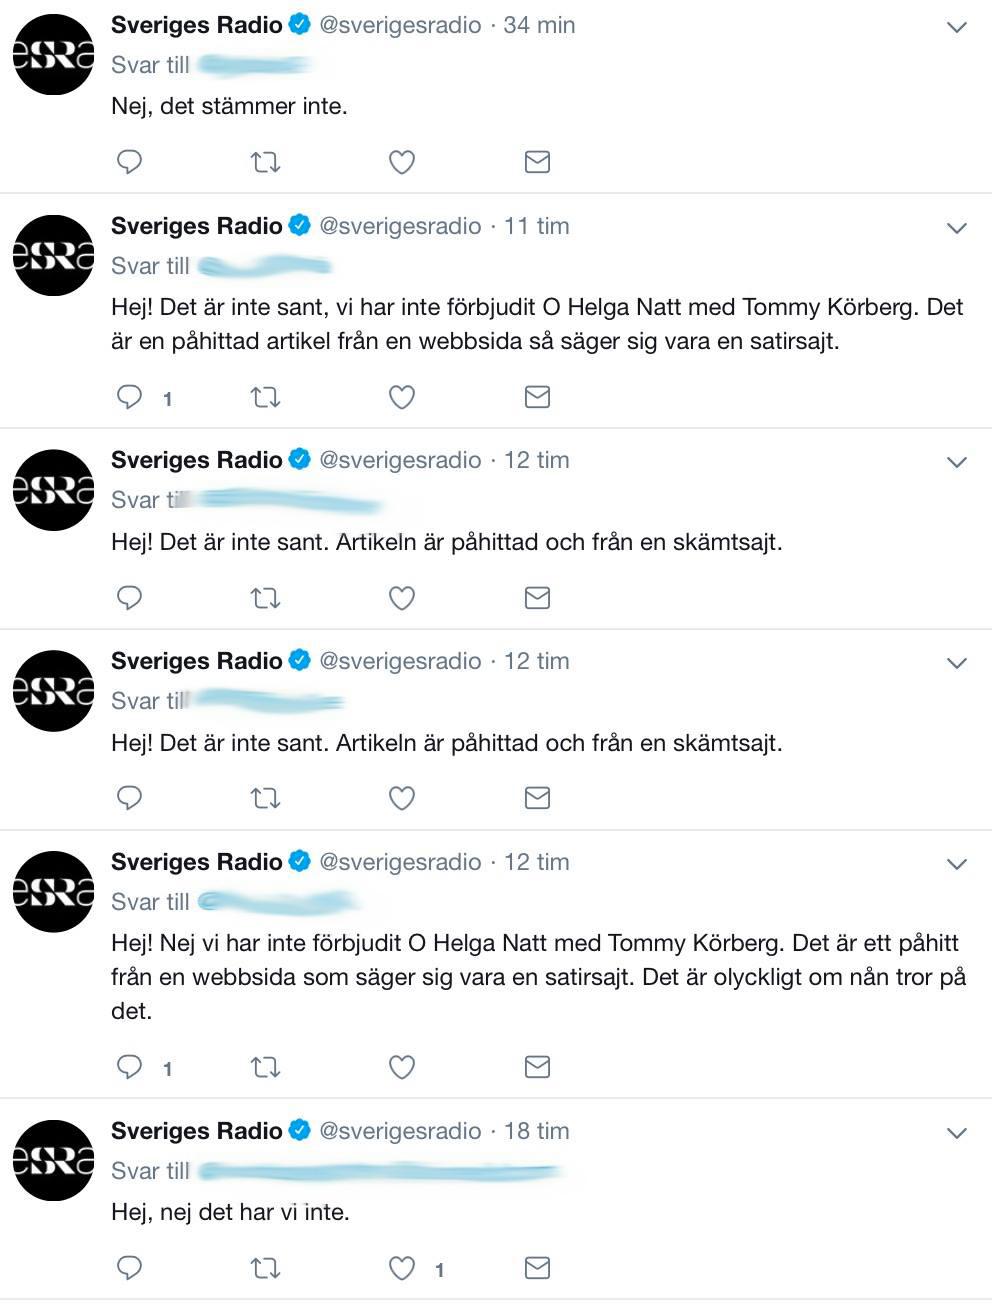 Sveriges Radios sociala medier-redaktörer har fått svara på många frågor om den fejkade nyheten.